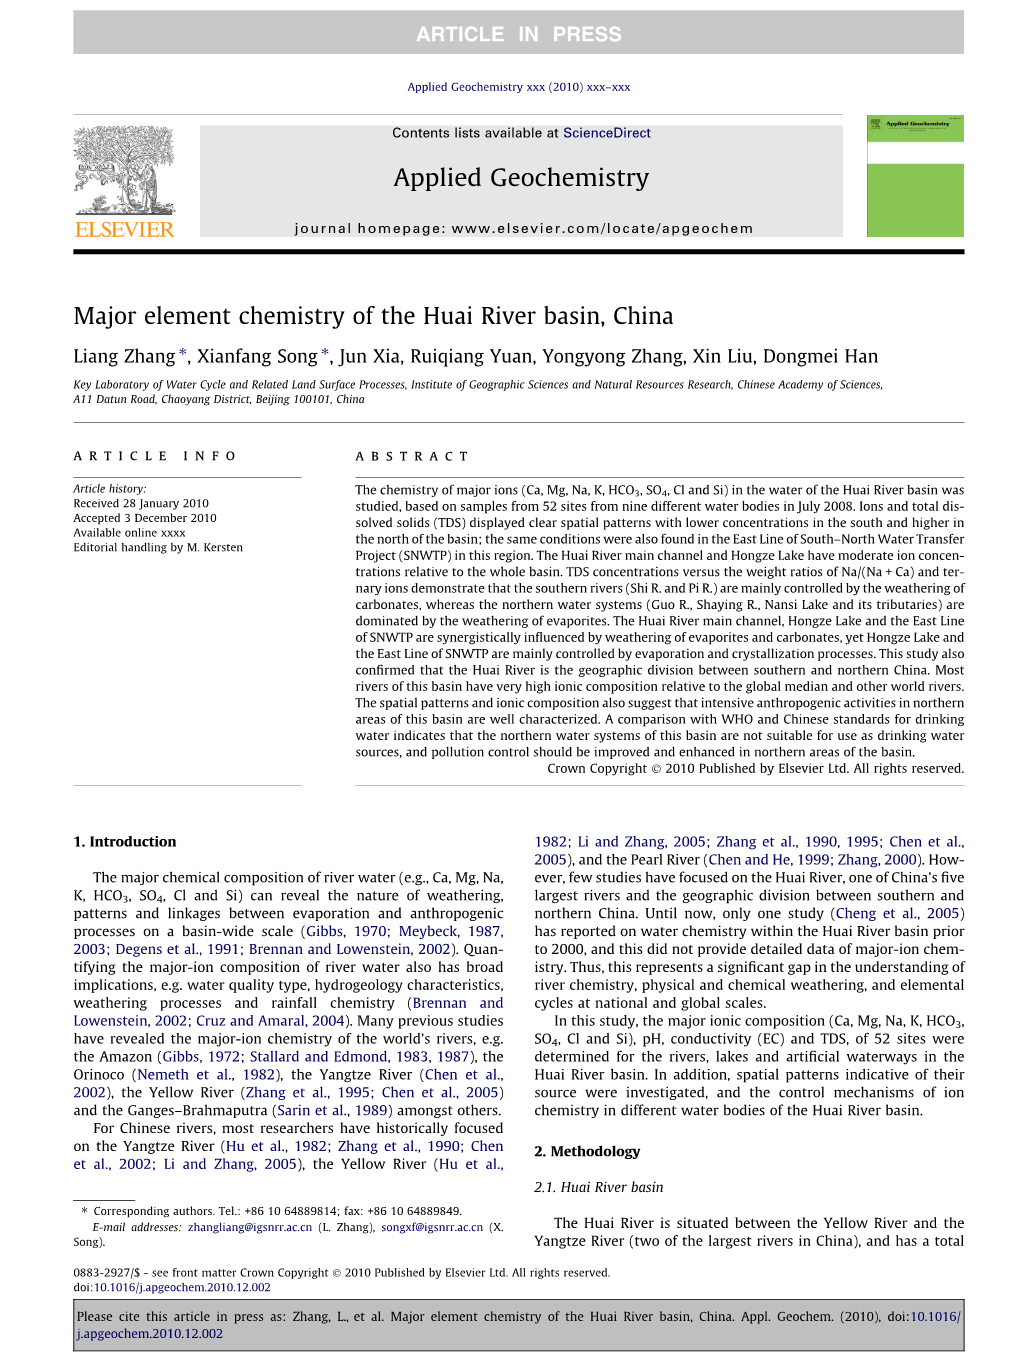 Major Element Chemistry of the Huai River Basin, China ⇑ ⇑ Liang Zhang , Xianfang Song , Jun Xia, Ruiqiang Yuan, Yongyong Zhang, Xin Liu, Dongmei Han